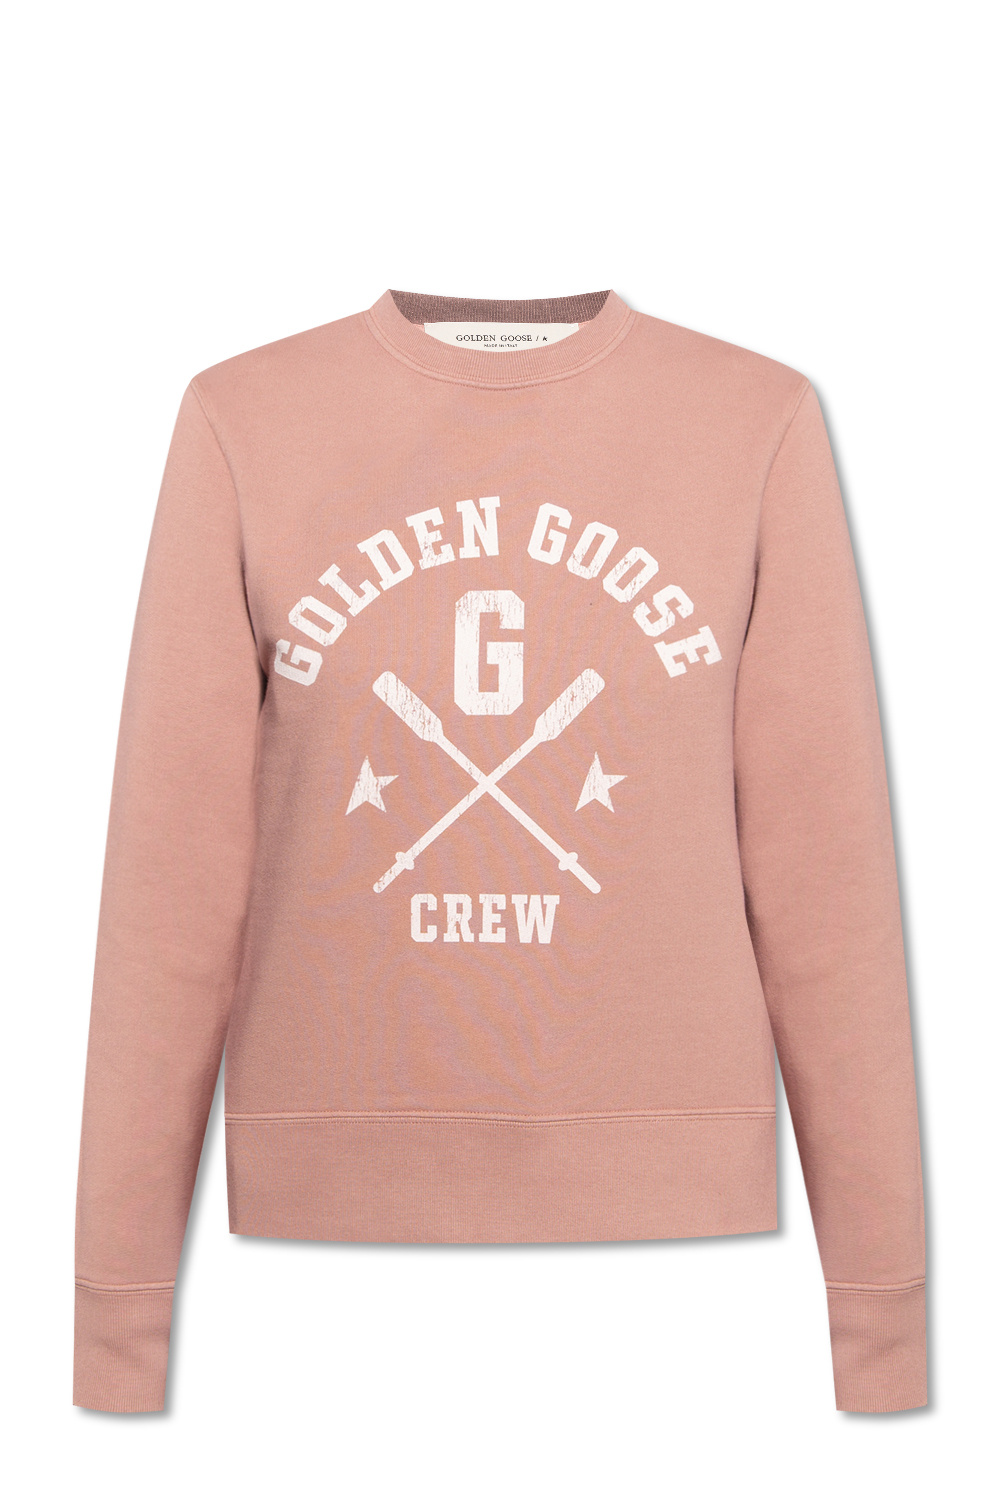 Women's Clothing | Golden Goose Printed sweatshirt 